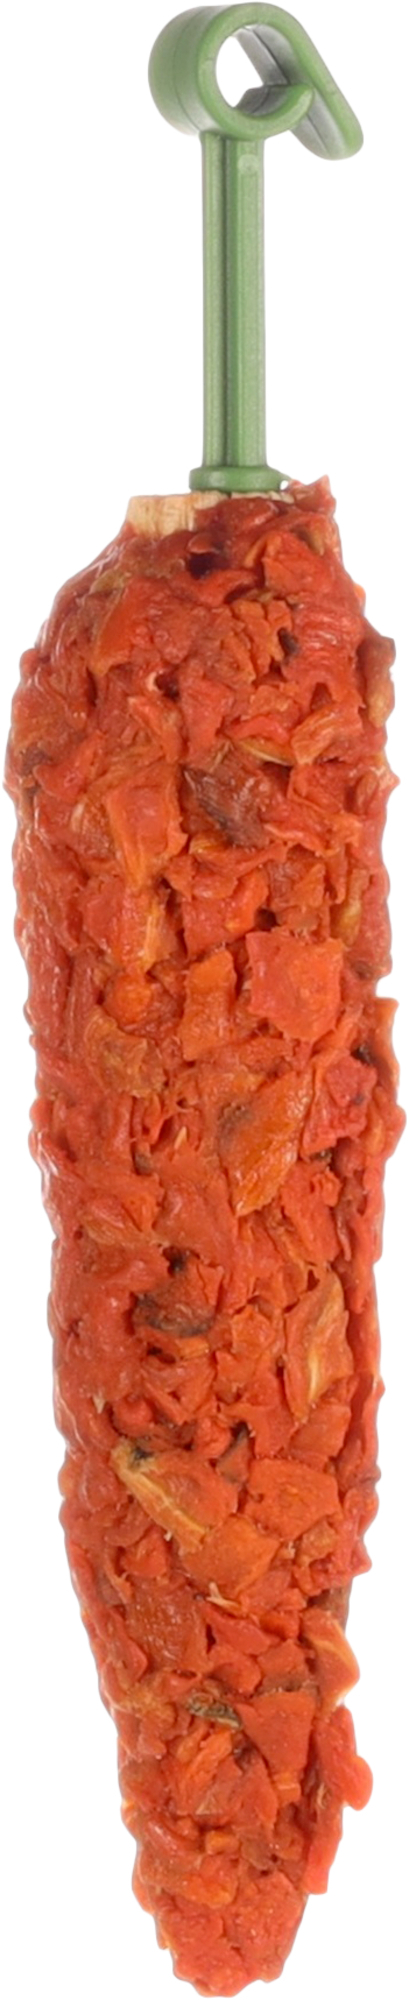 Natürliche Snacks mit Karotten für Nagetiere - 60gr